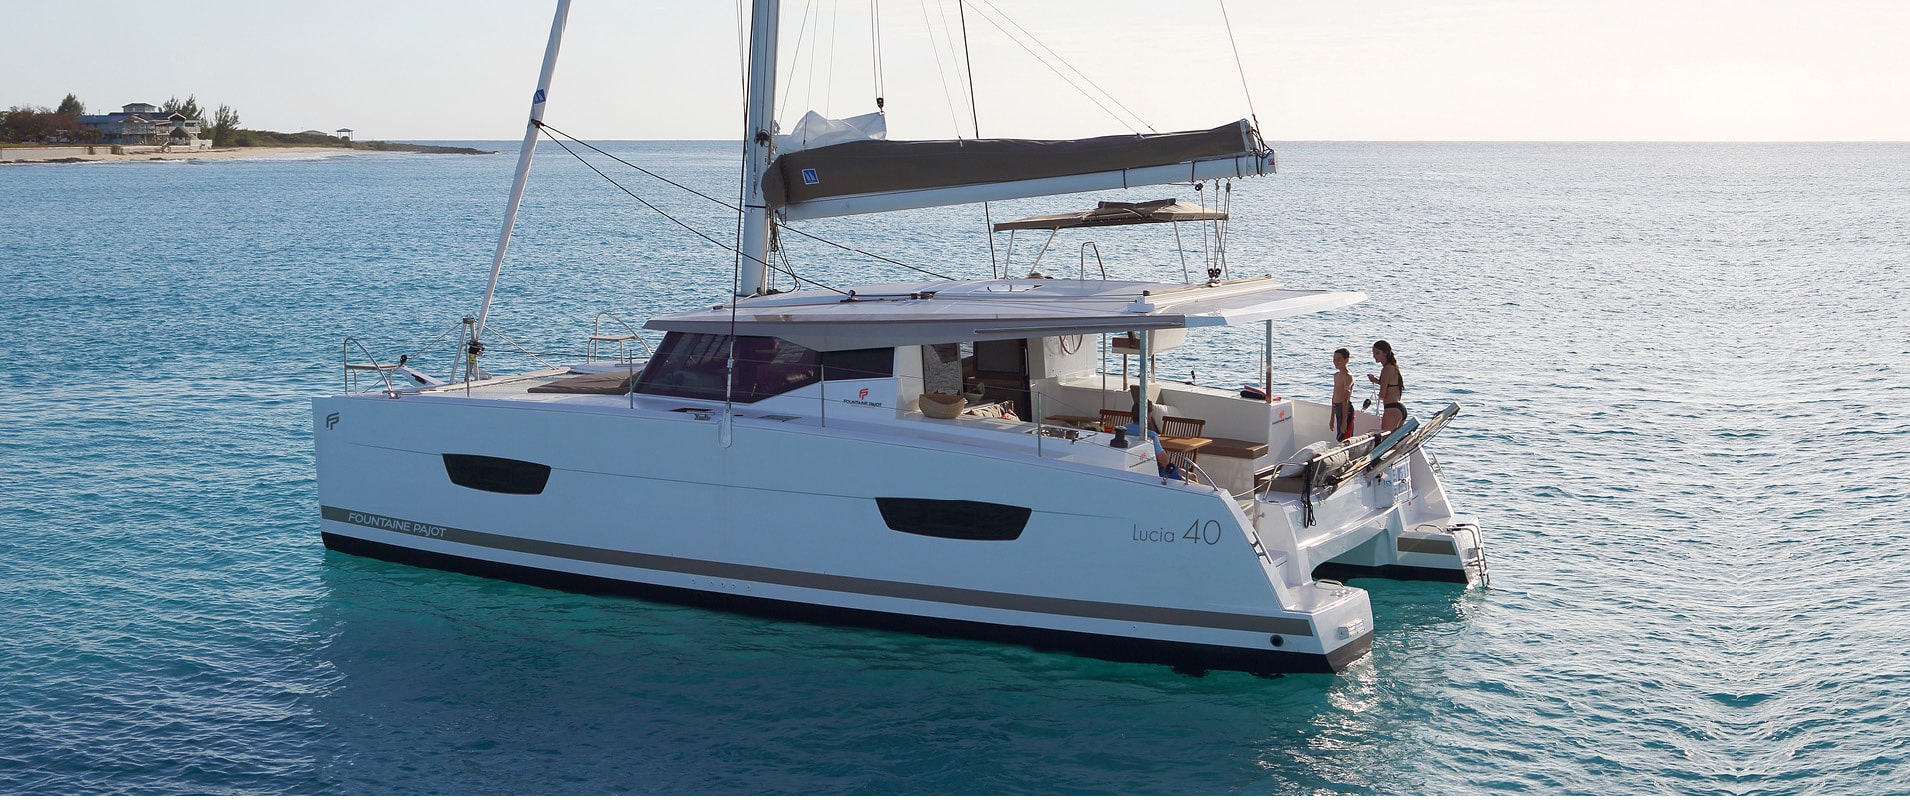 Fountaine Pajot Lucia 40 - Yacht Charter Mykonos & Boat hire in Greece Cyclades Islands Mykonos Mykonos 5